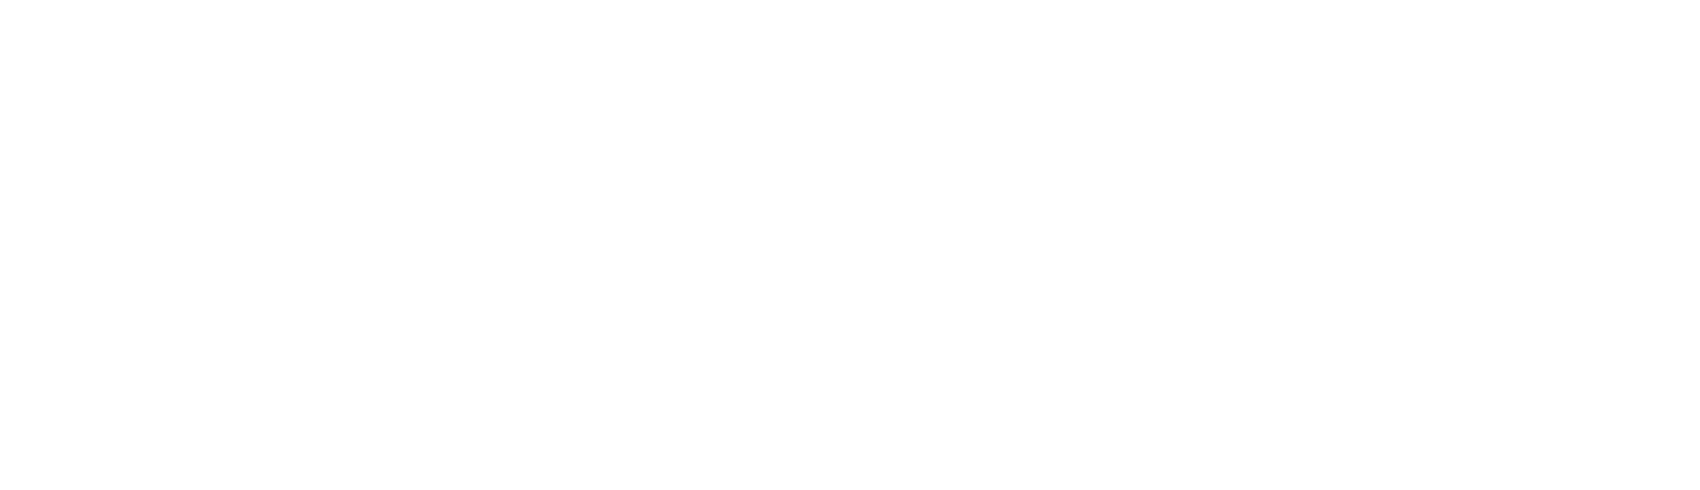 J.U. Srednja medicinska škola Sarajevo.